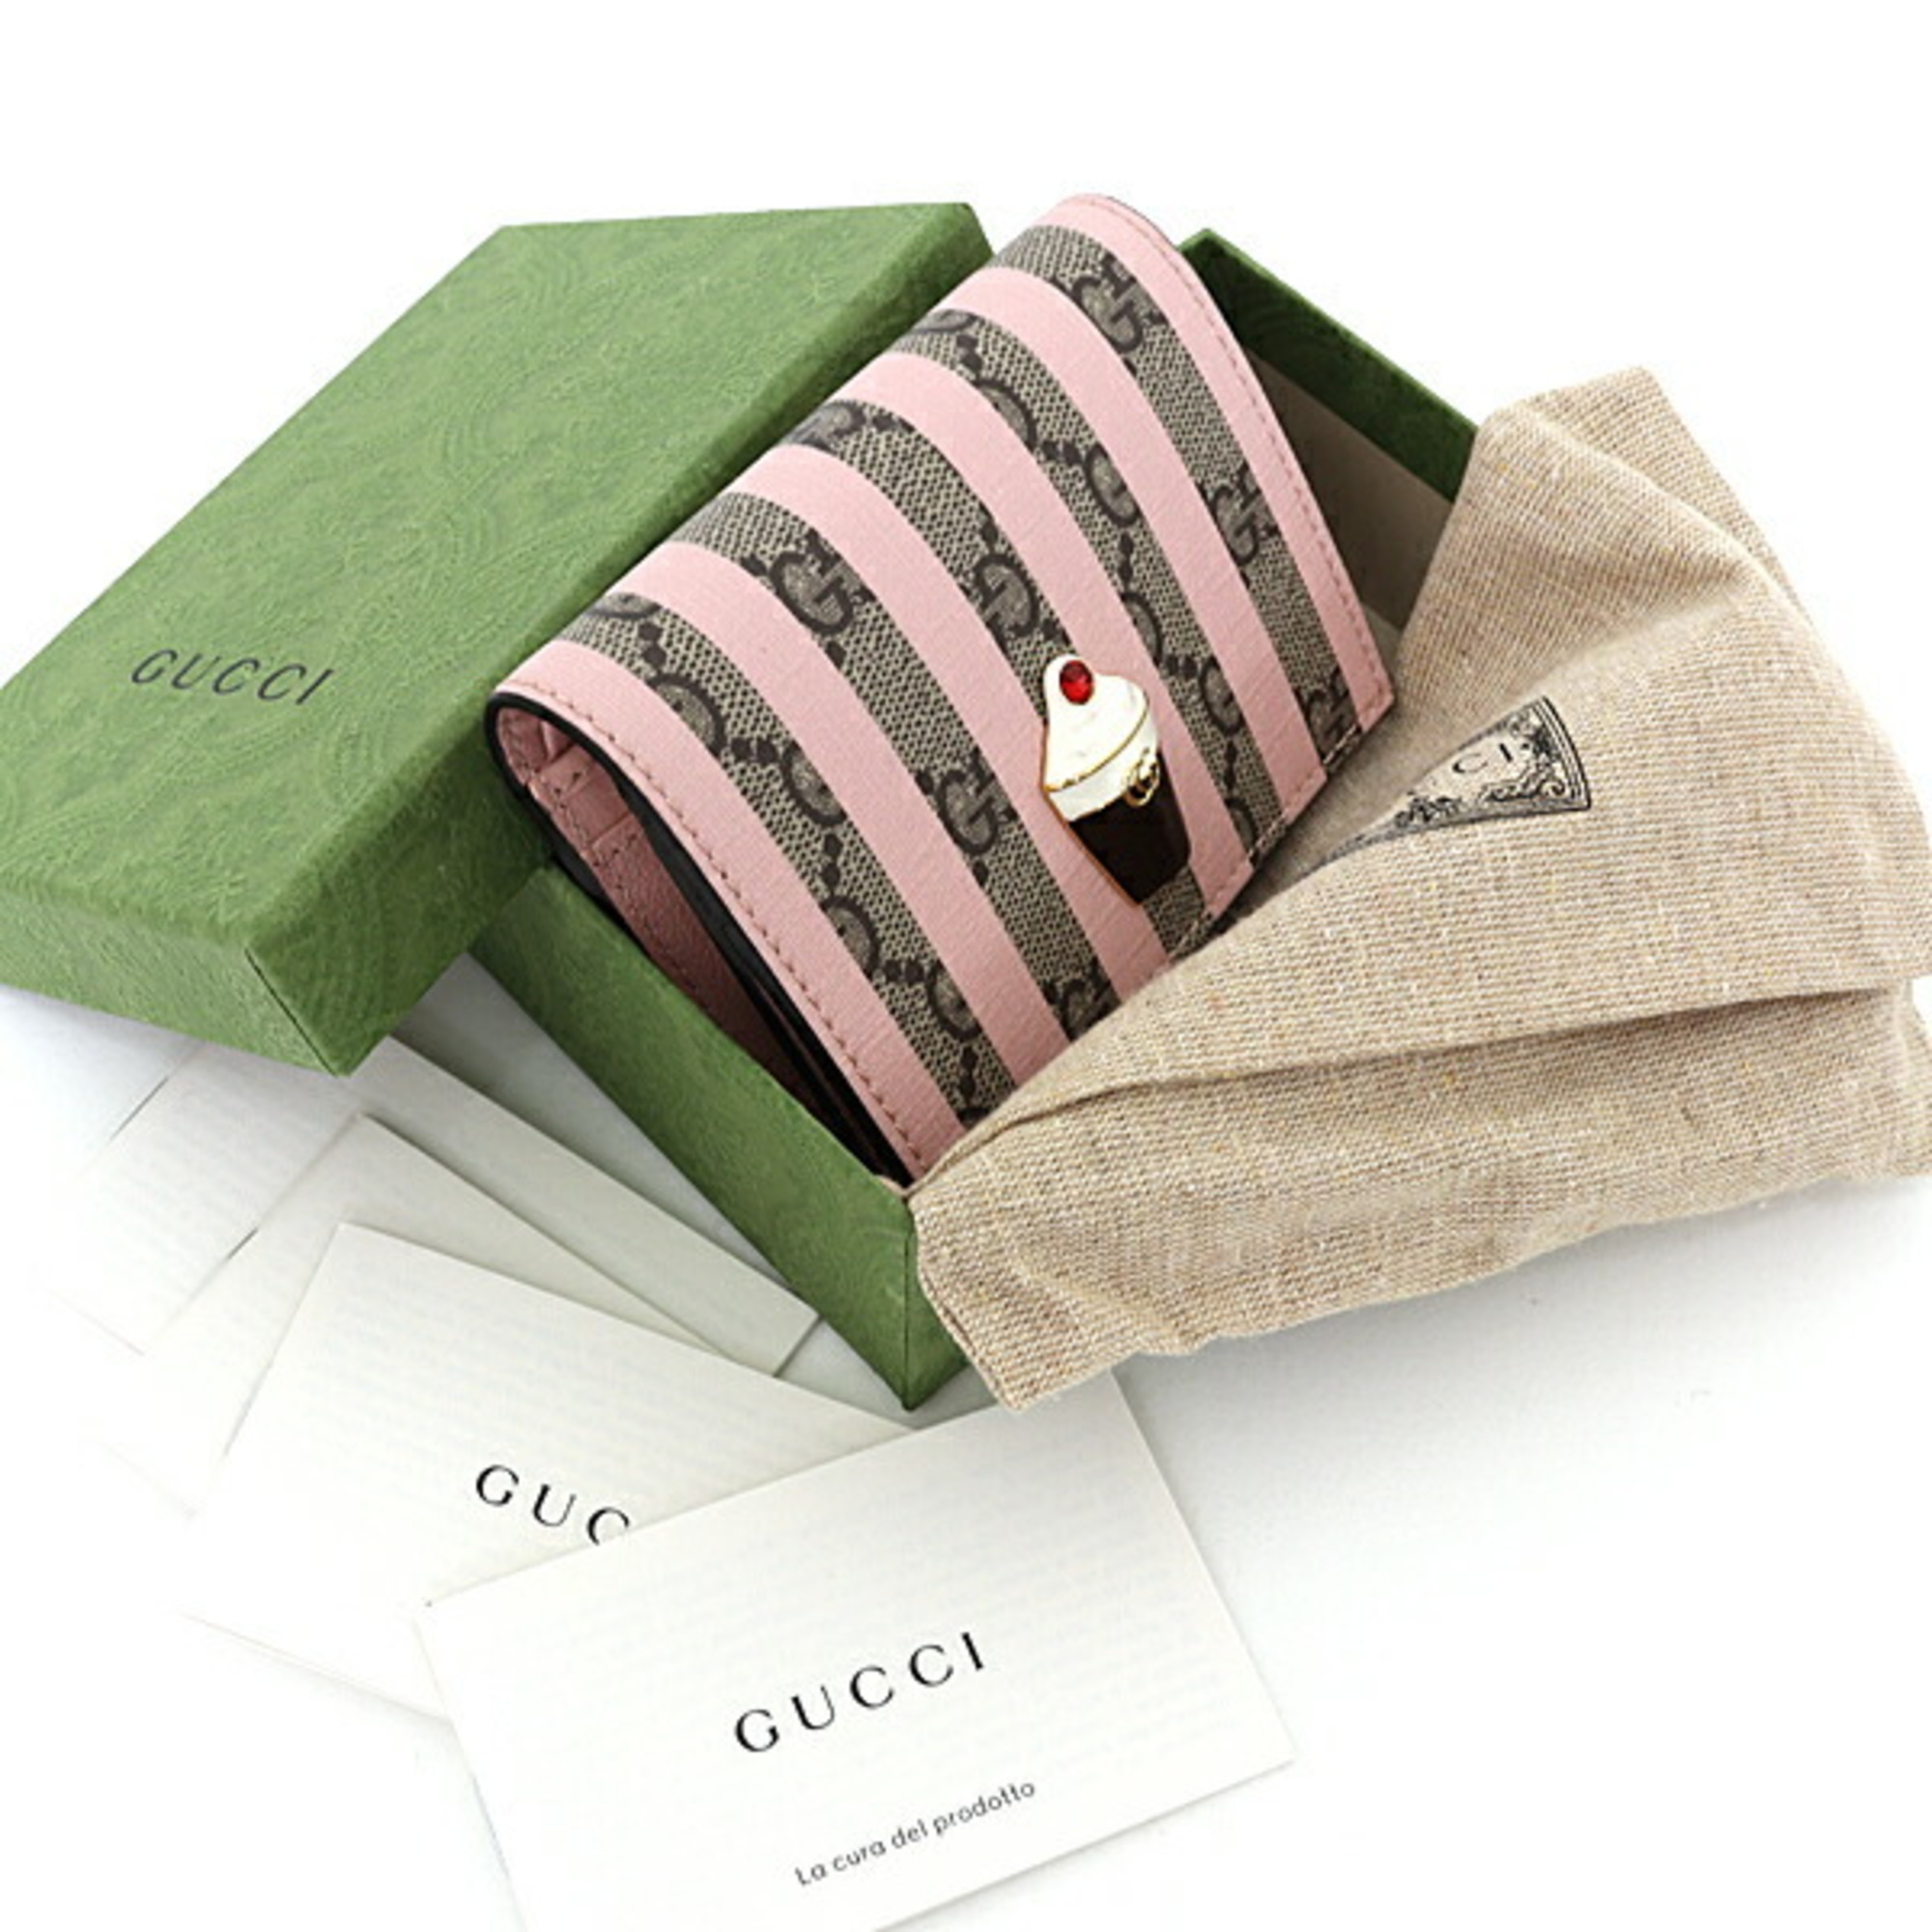 GUCCI GG Supreme Card Case Wallet Ice Cream 701489 Pink Beige